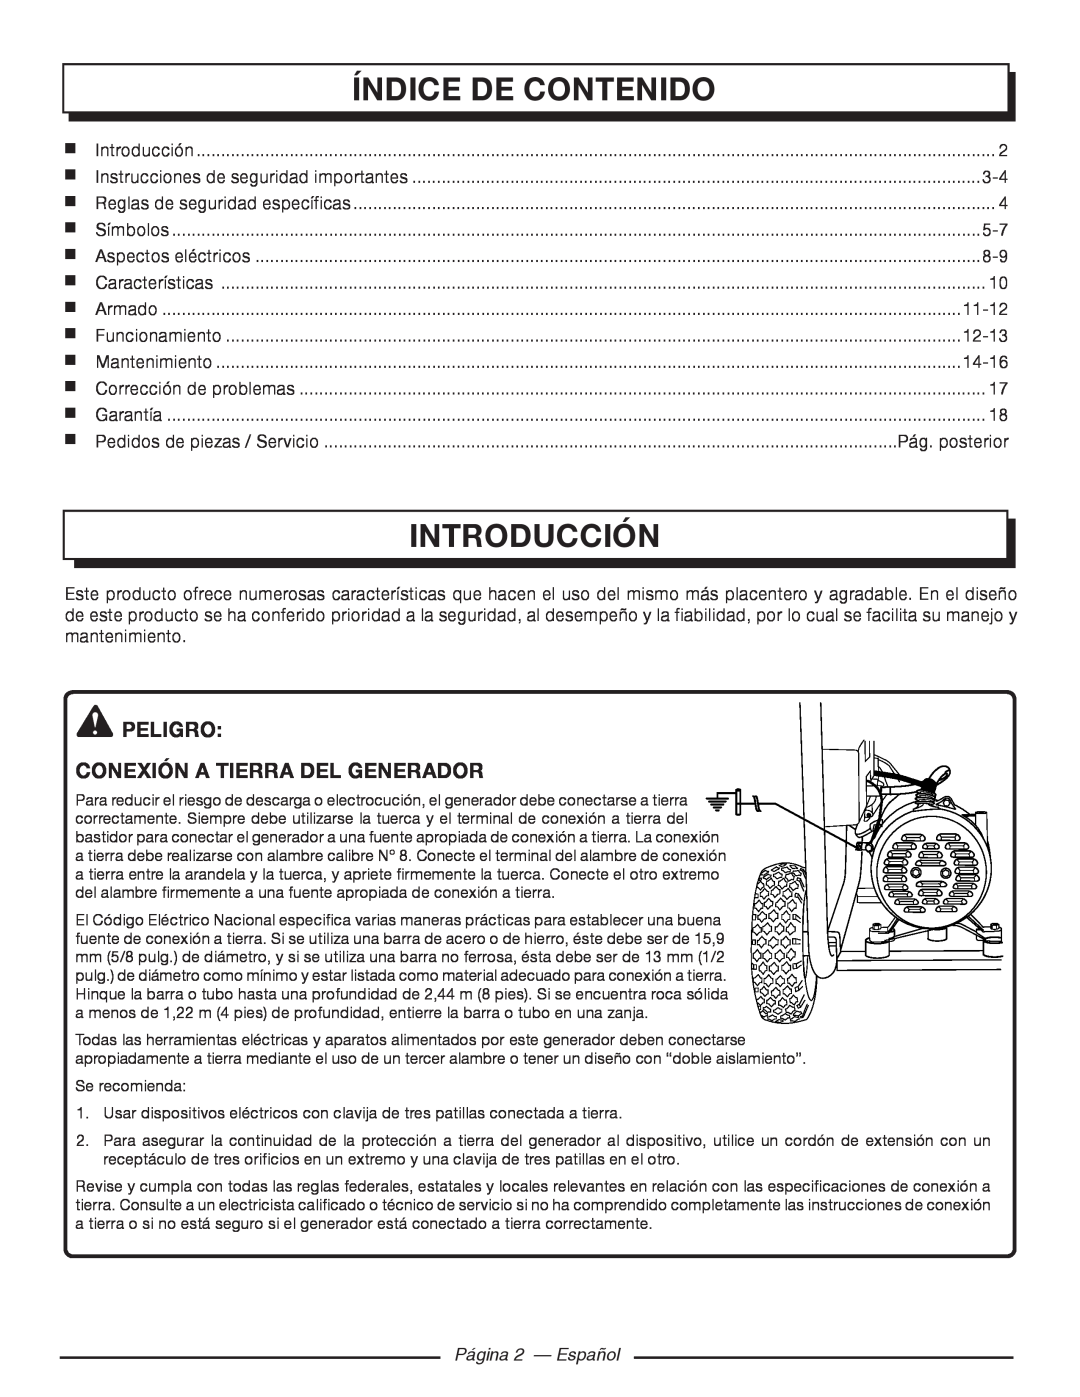 Homelite HGCA5700 Índice De Contenido, Introducción, peligro Conexión a tierra del generador, Página 2 — Español 